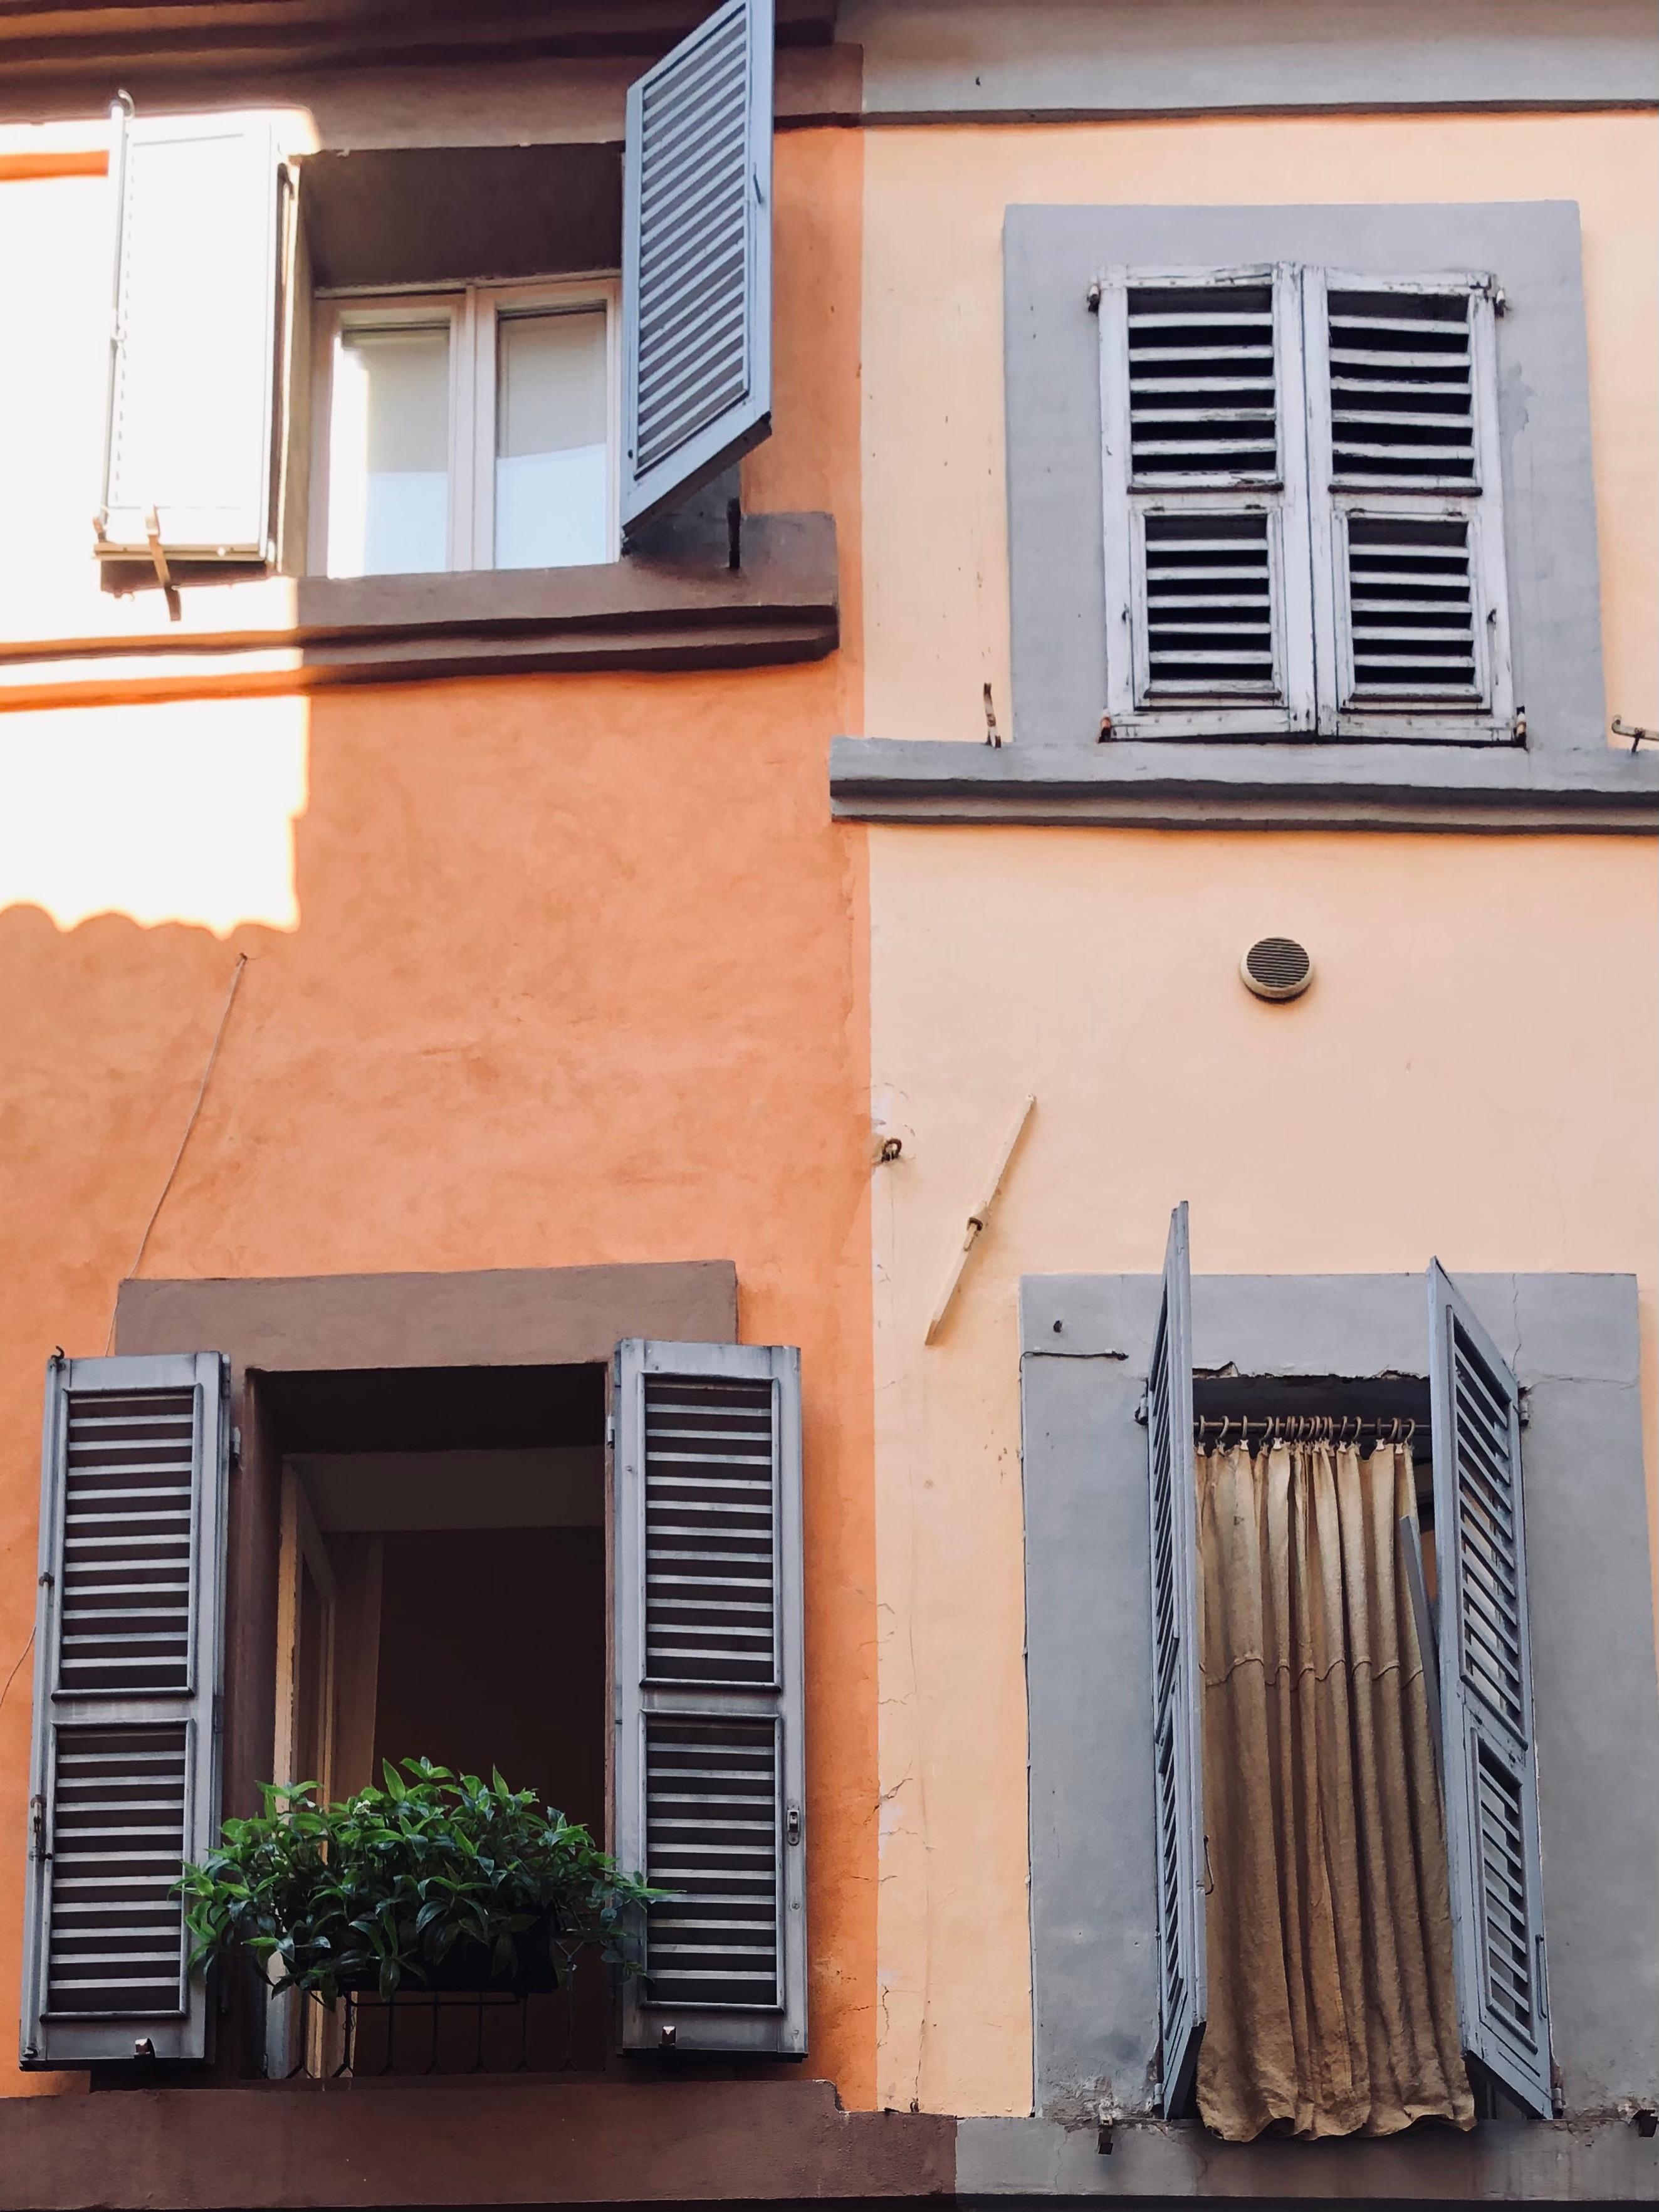 Details.
#windowsofitaly #macerata #marcheregion